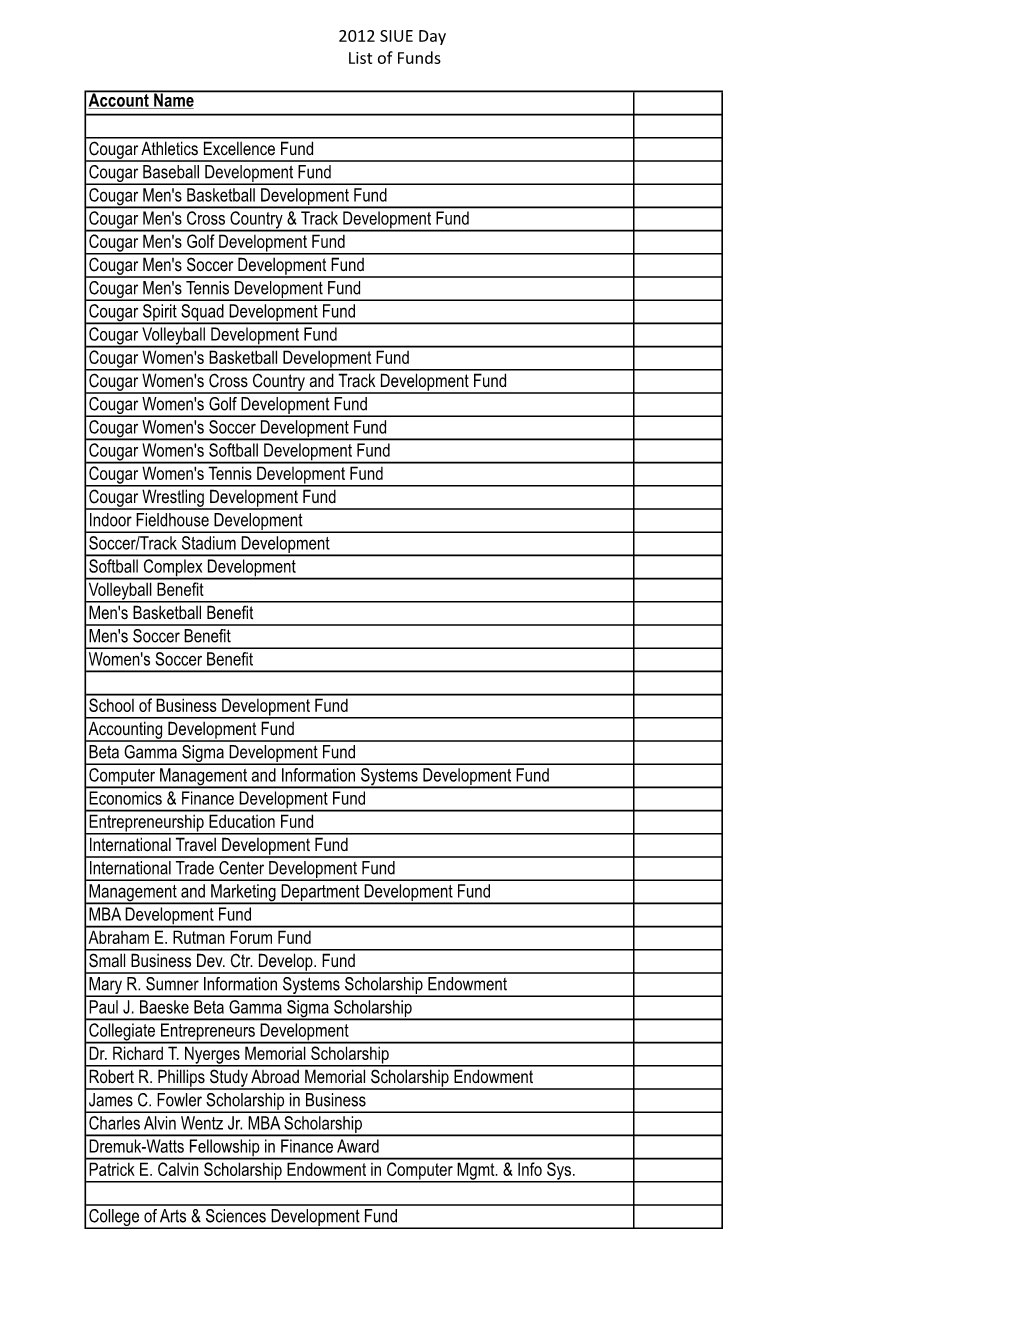 List of Funds(1).Xlsx